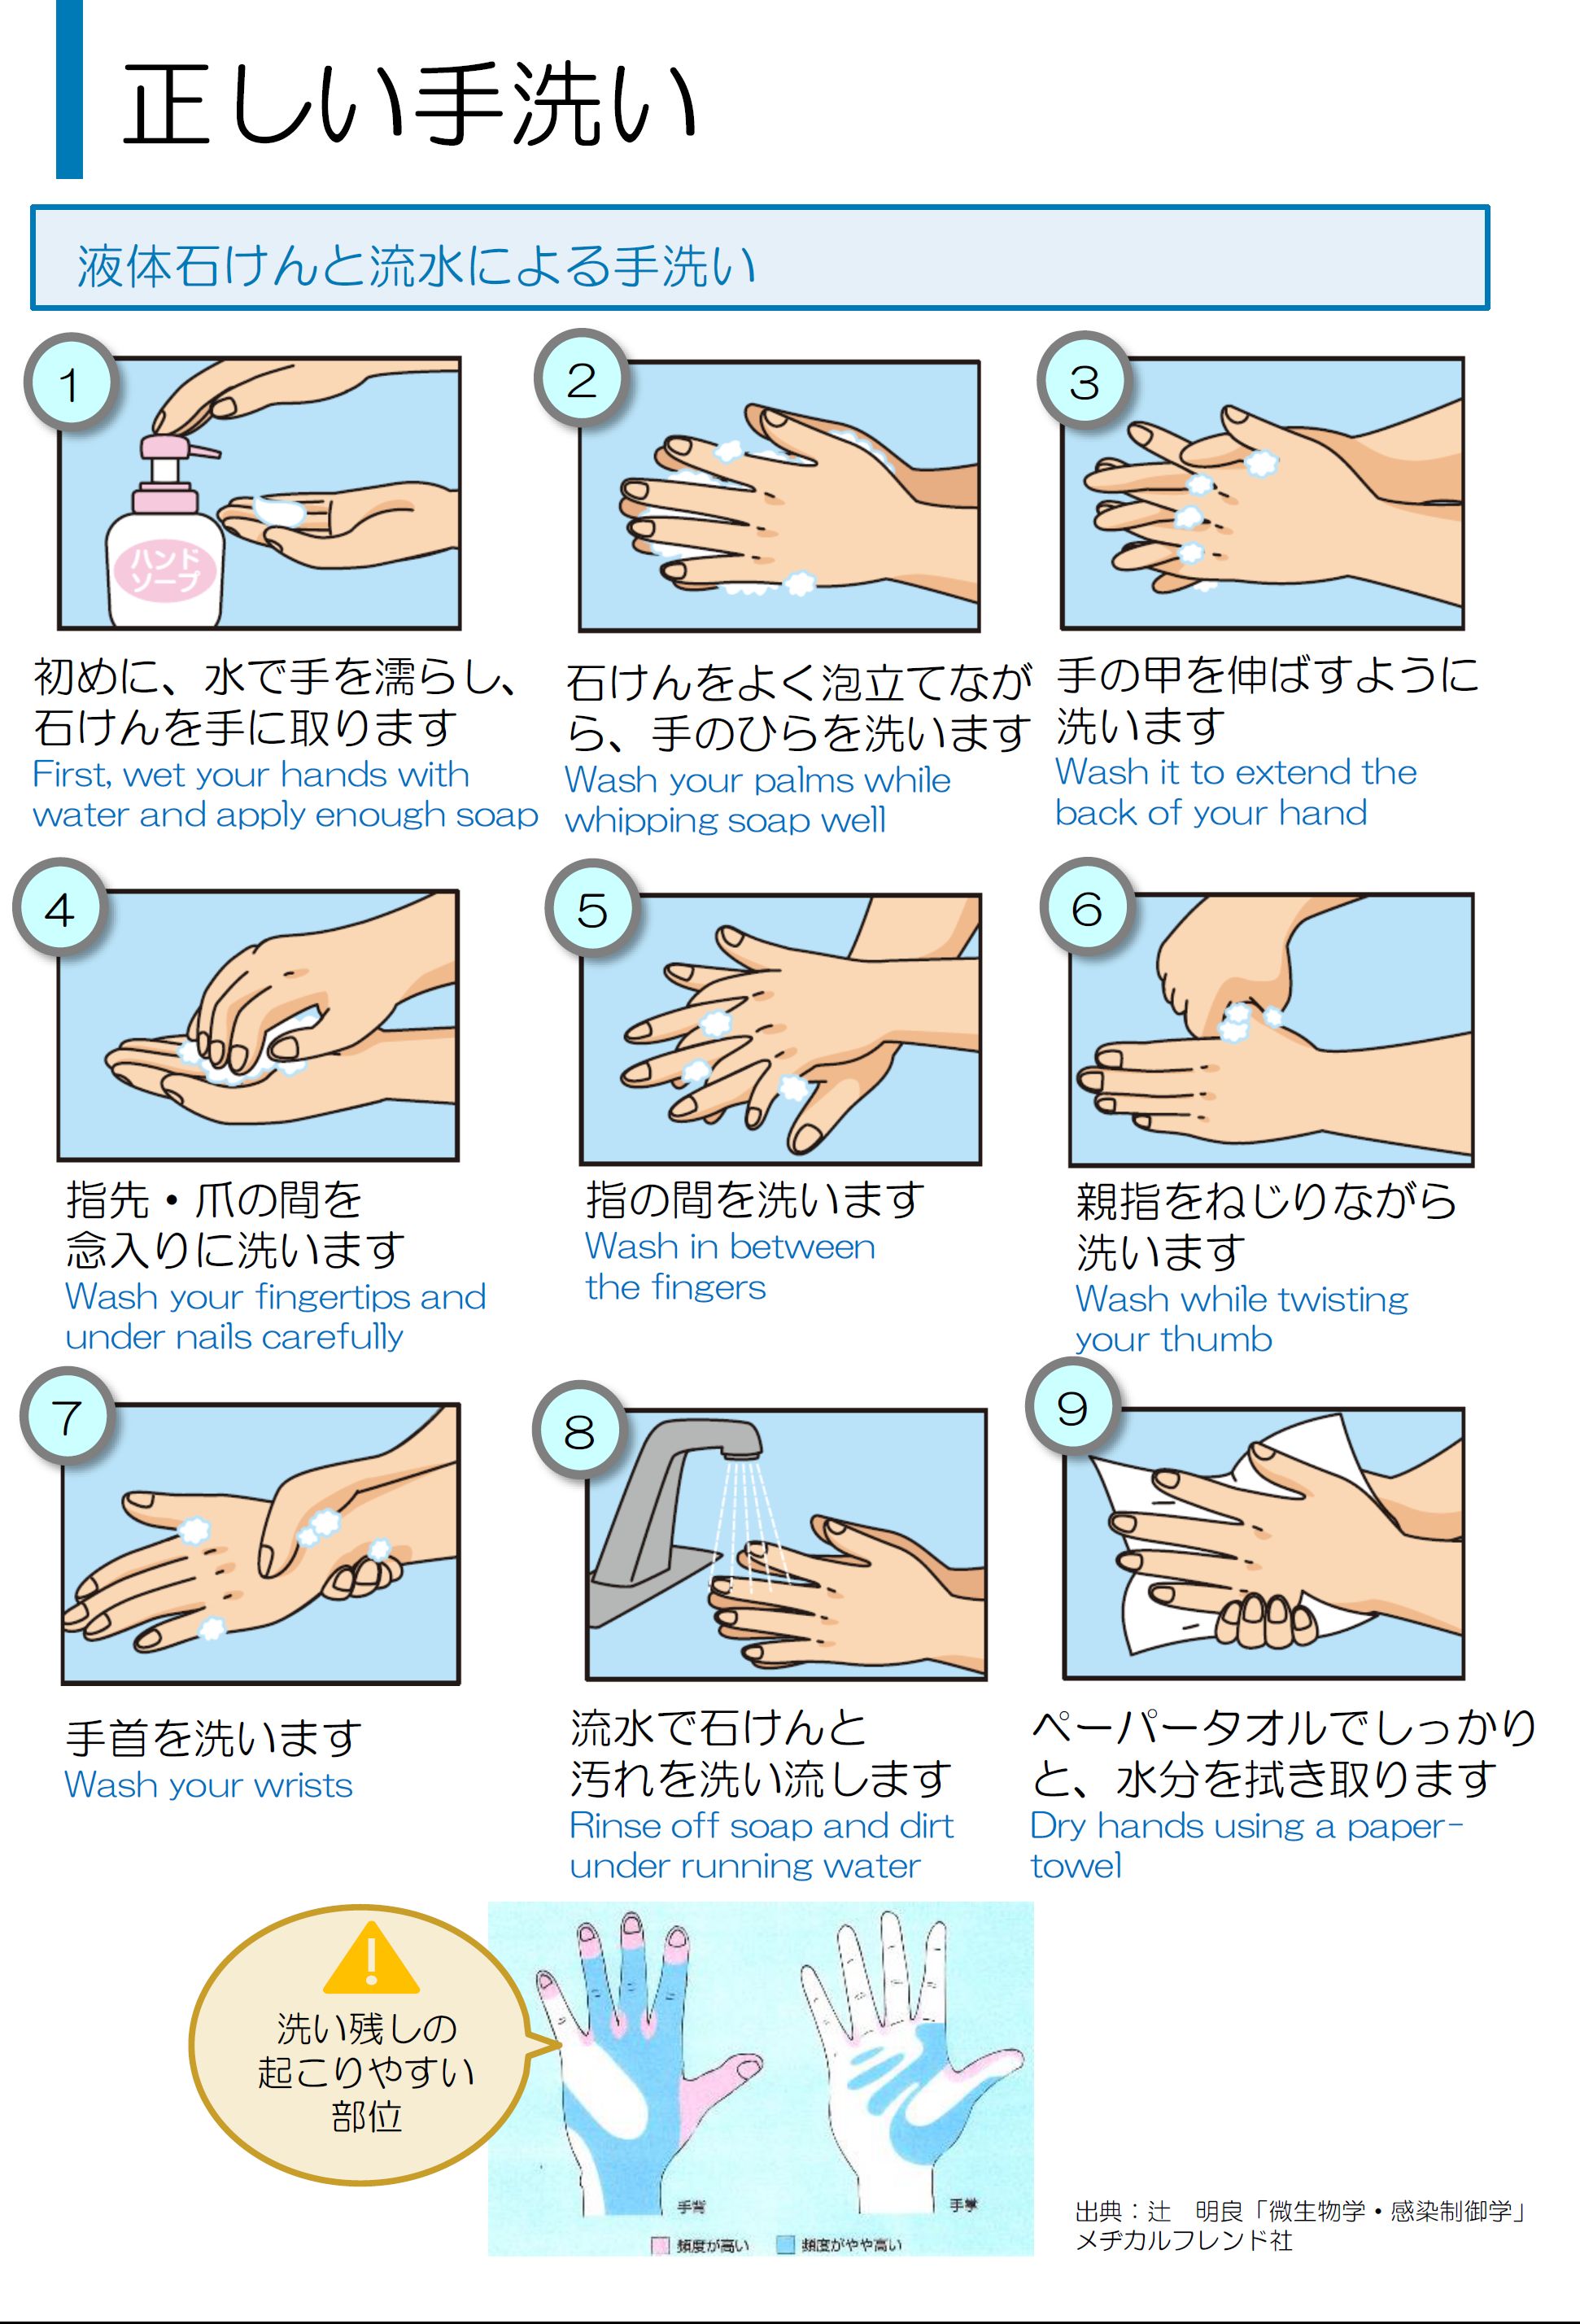 正しい手洗い 手の消毒について 株式会社reliable